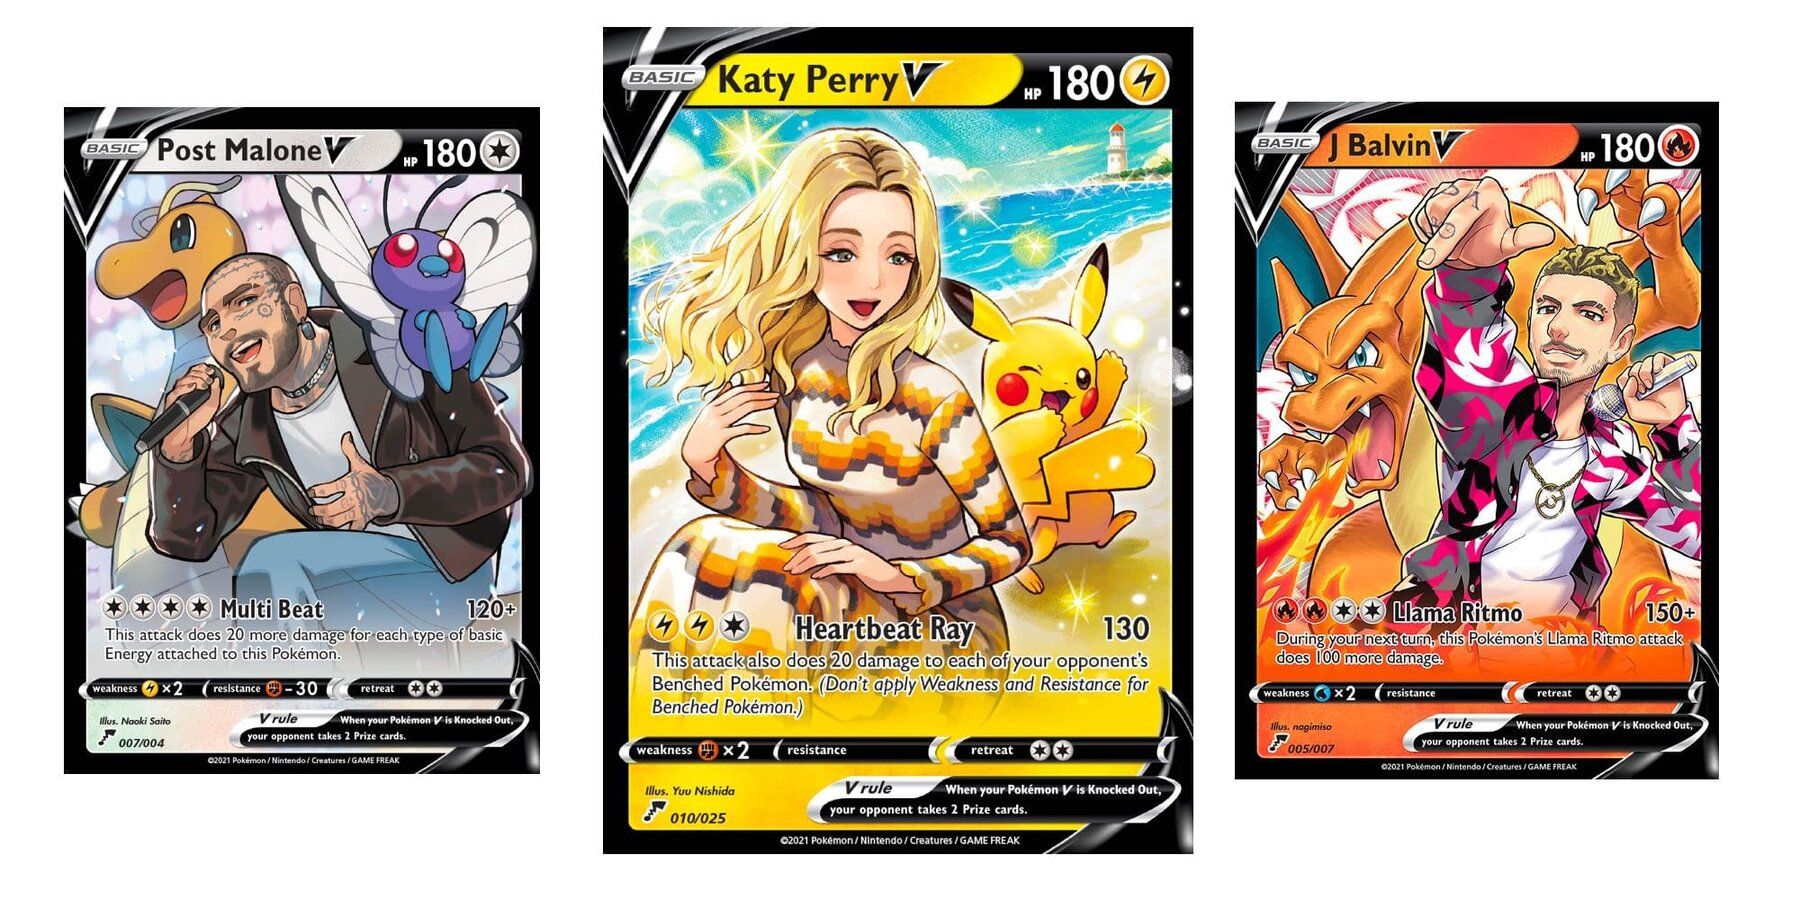 Карточки Pokemon V с участием Поста Мэлоуна, Кэти Перри и Джей Бэлвина